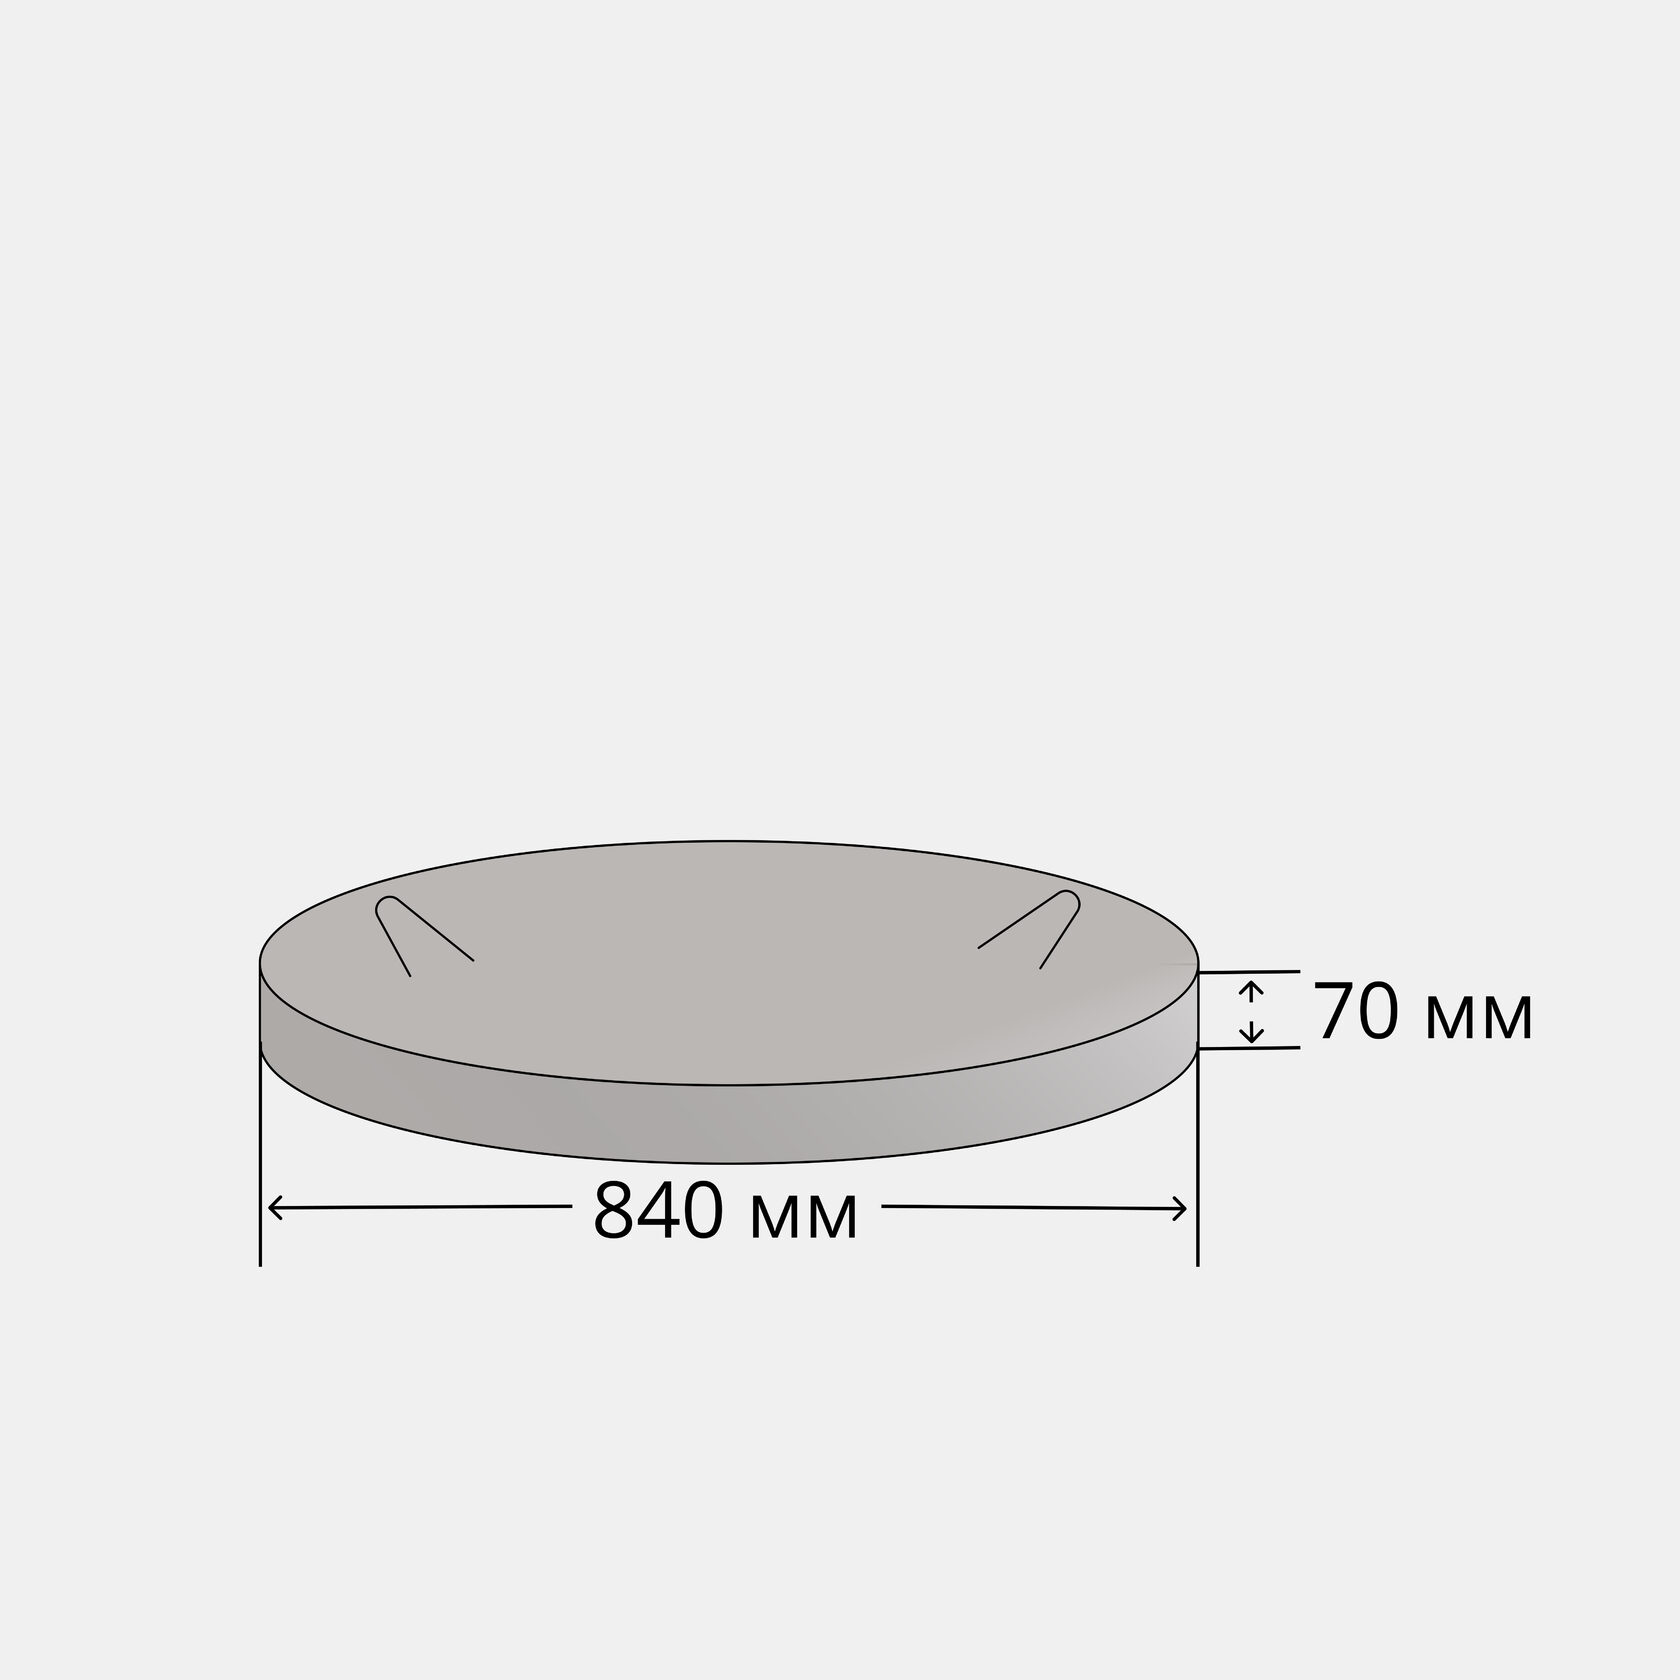 Люк железобетонный. Люк бетонный диаметр 800мм толщина 80 мм. Люк бетонный (таблетка 840х80 мм). Люк бетонный ЛБ 70. Крышка люка железобетонная кл-1.